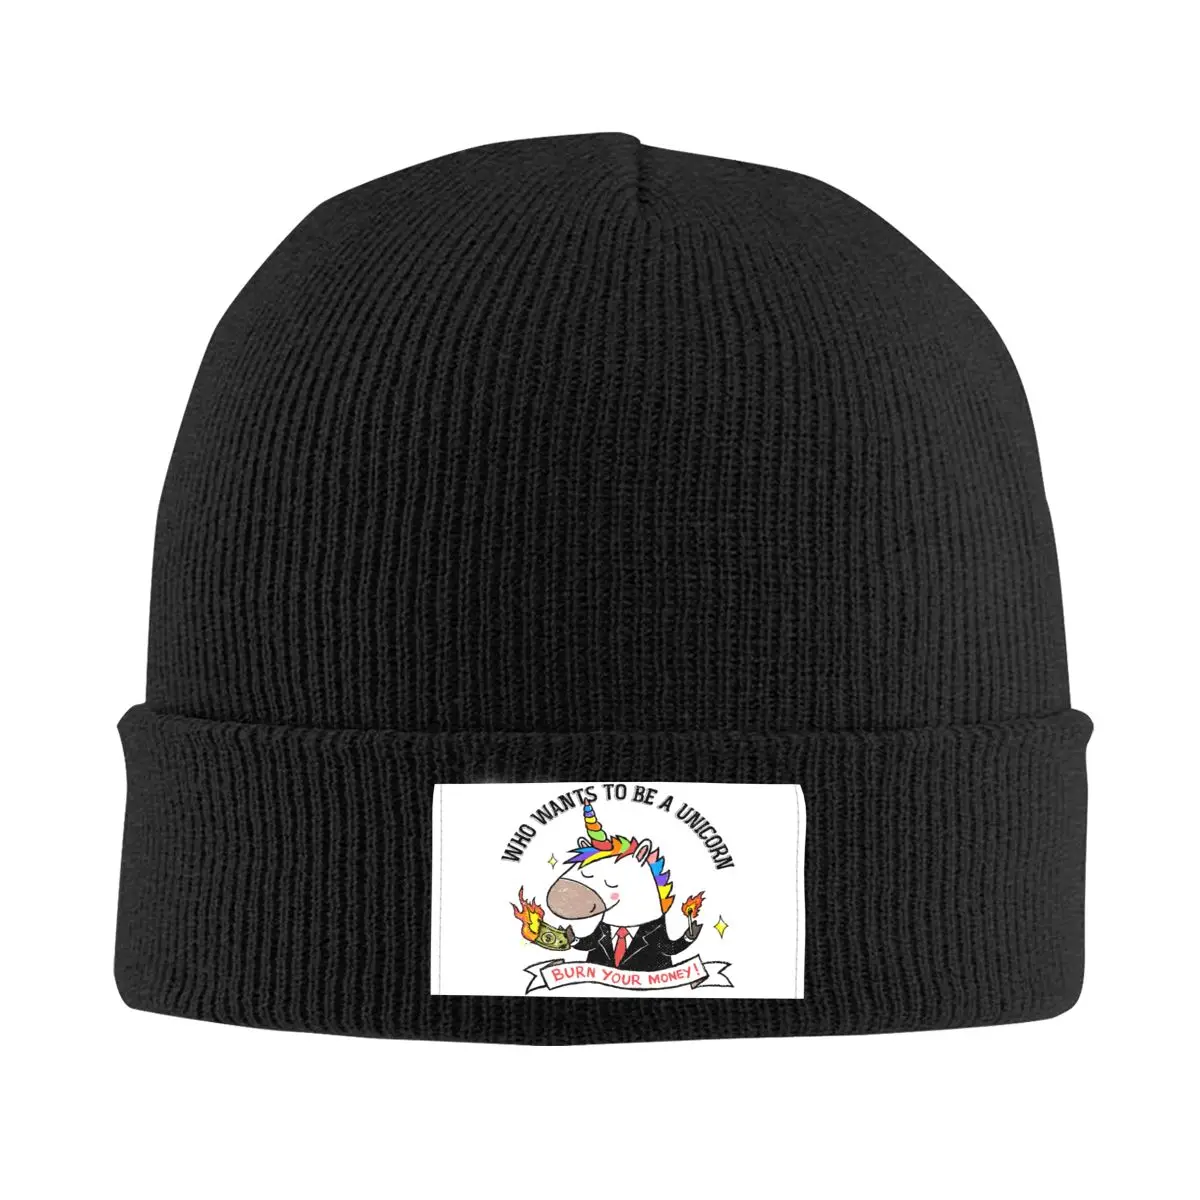 

Шапки с надписью "Burn Your Money", облегающие шапки, крутые зимние теплые мужские и женские вязаные шапки, забавные взрослые шапки унисекс с единорогом, шапки